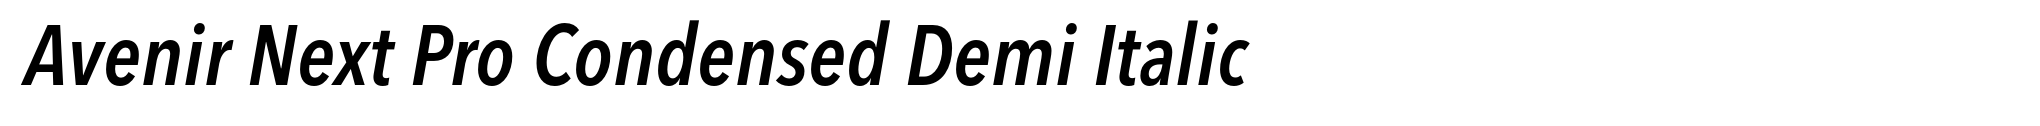 Avenir Next Pro Condensed Demi Italic image